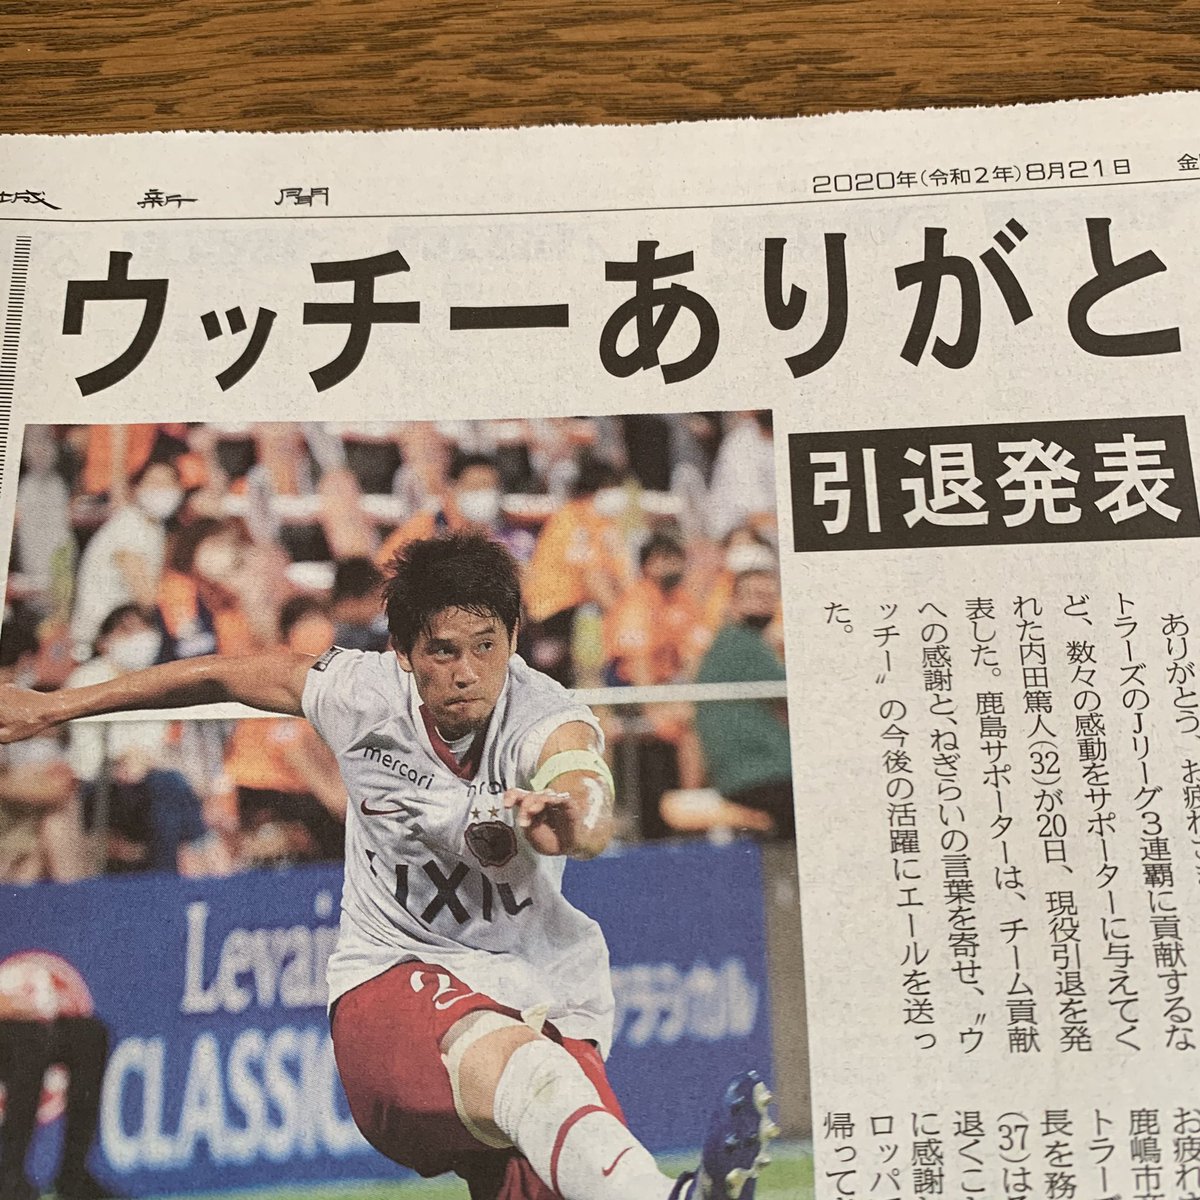 森 裕紀 内田篤人選手の記事を見たくて茨城新聞 買ってきました